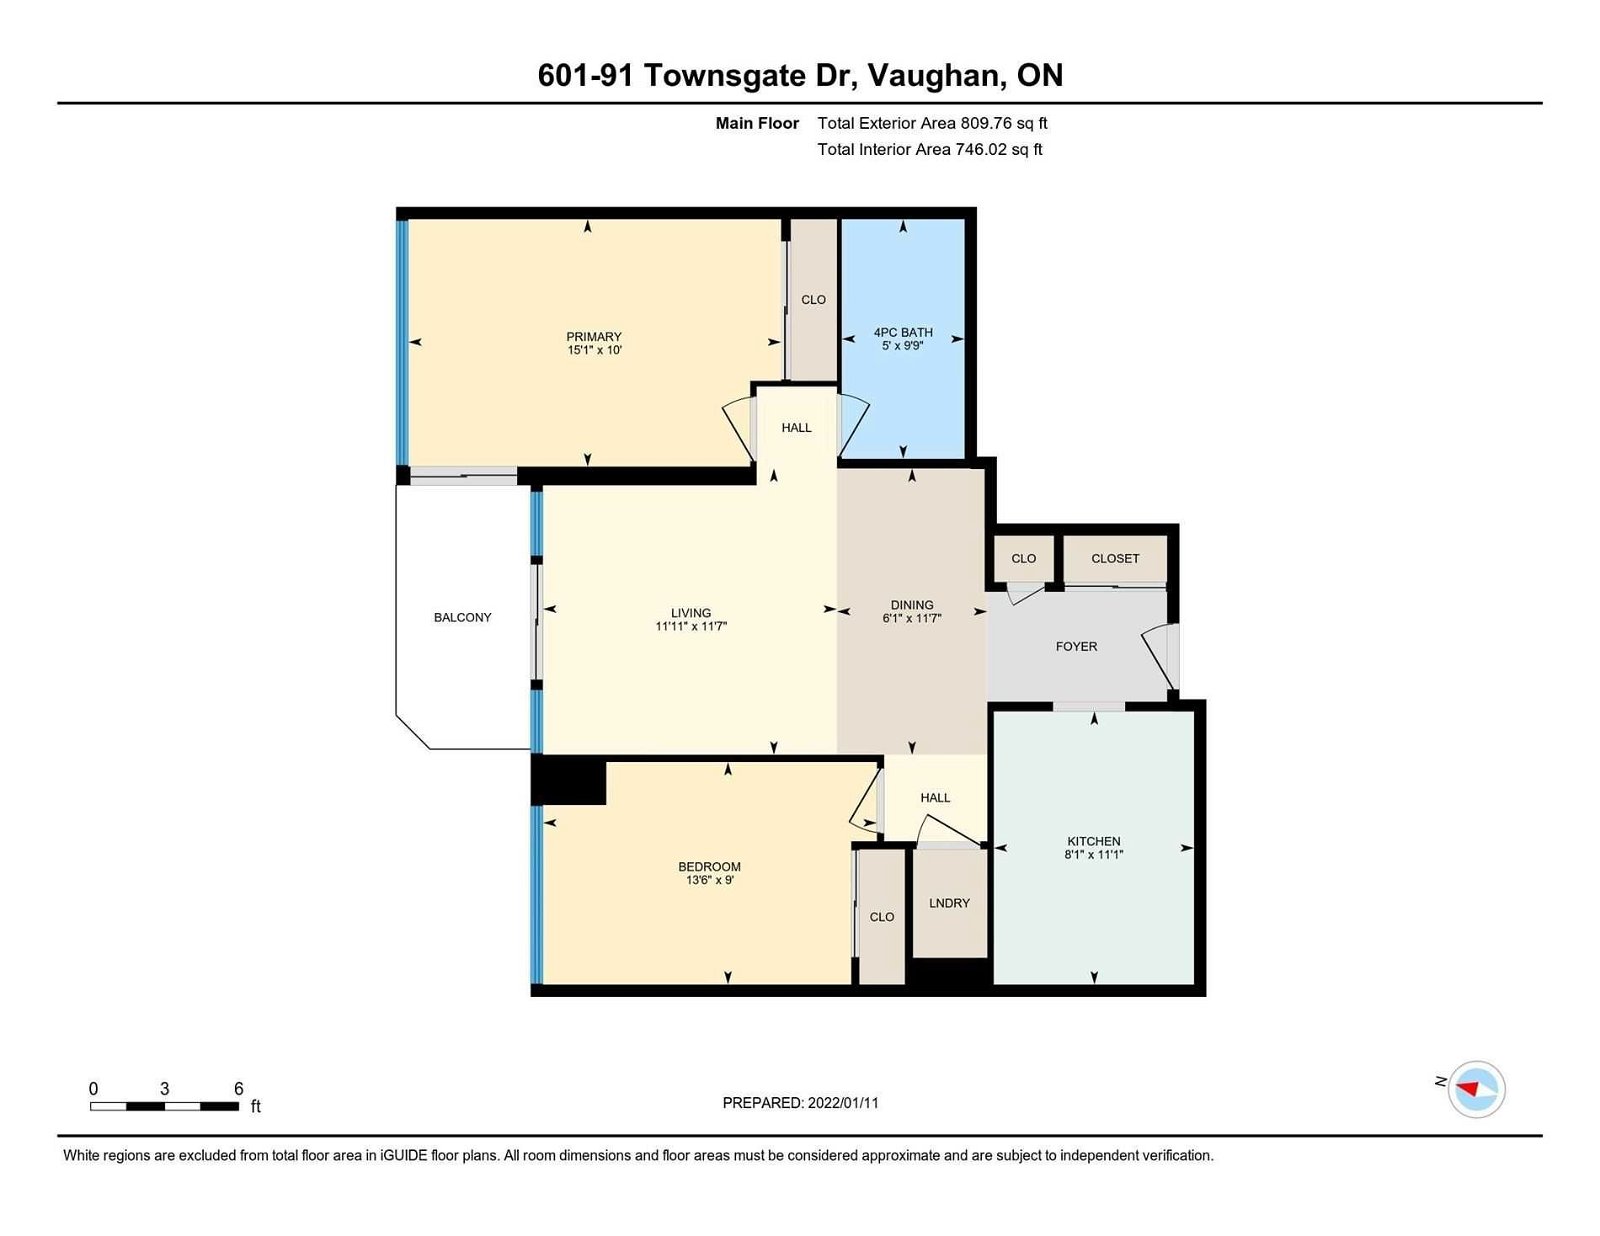 91 Townsgate Dr, unit 601 for sale - image #3